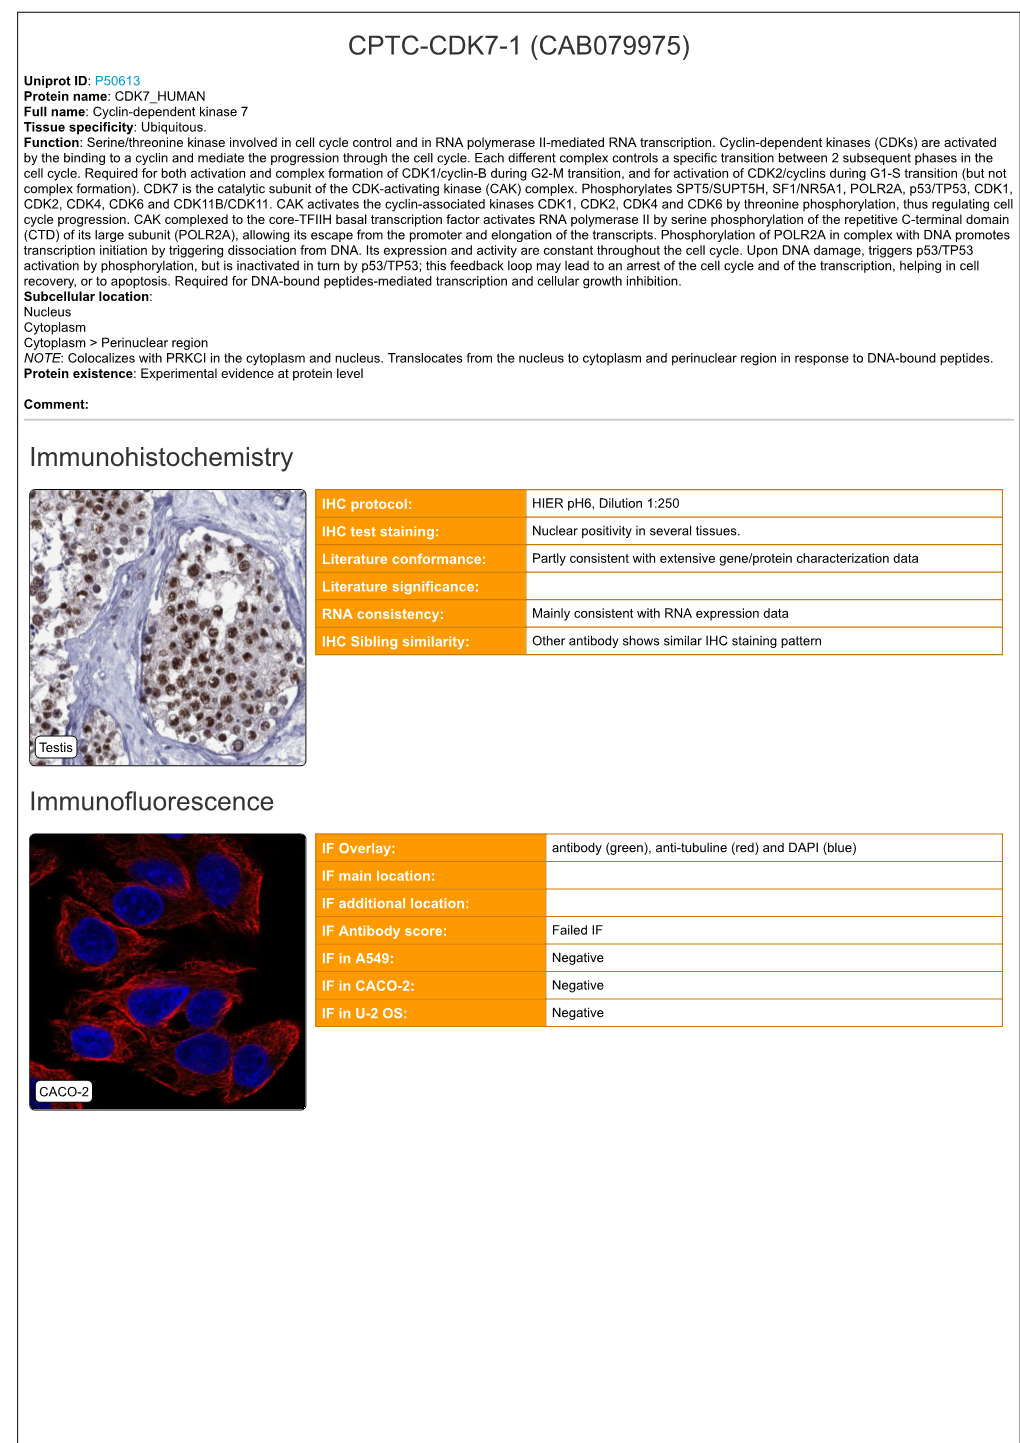 CPTC-CDK7-1 (CAB079975) Immunohistochemistry Immunofluorescence